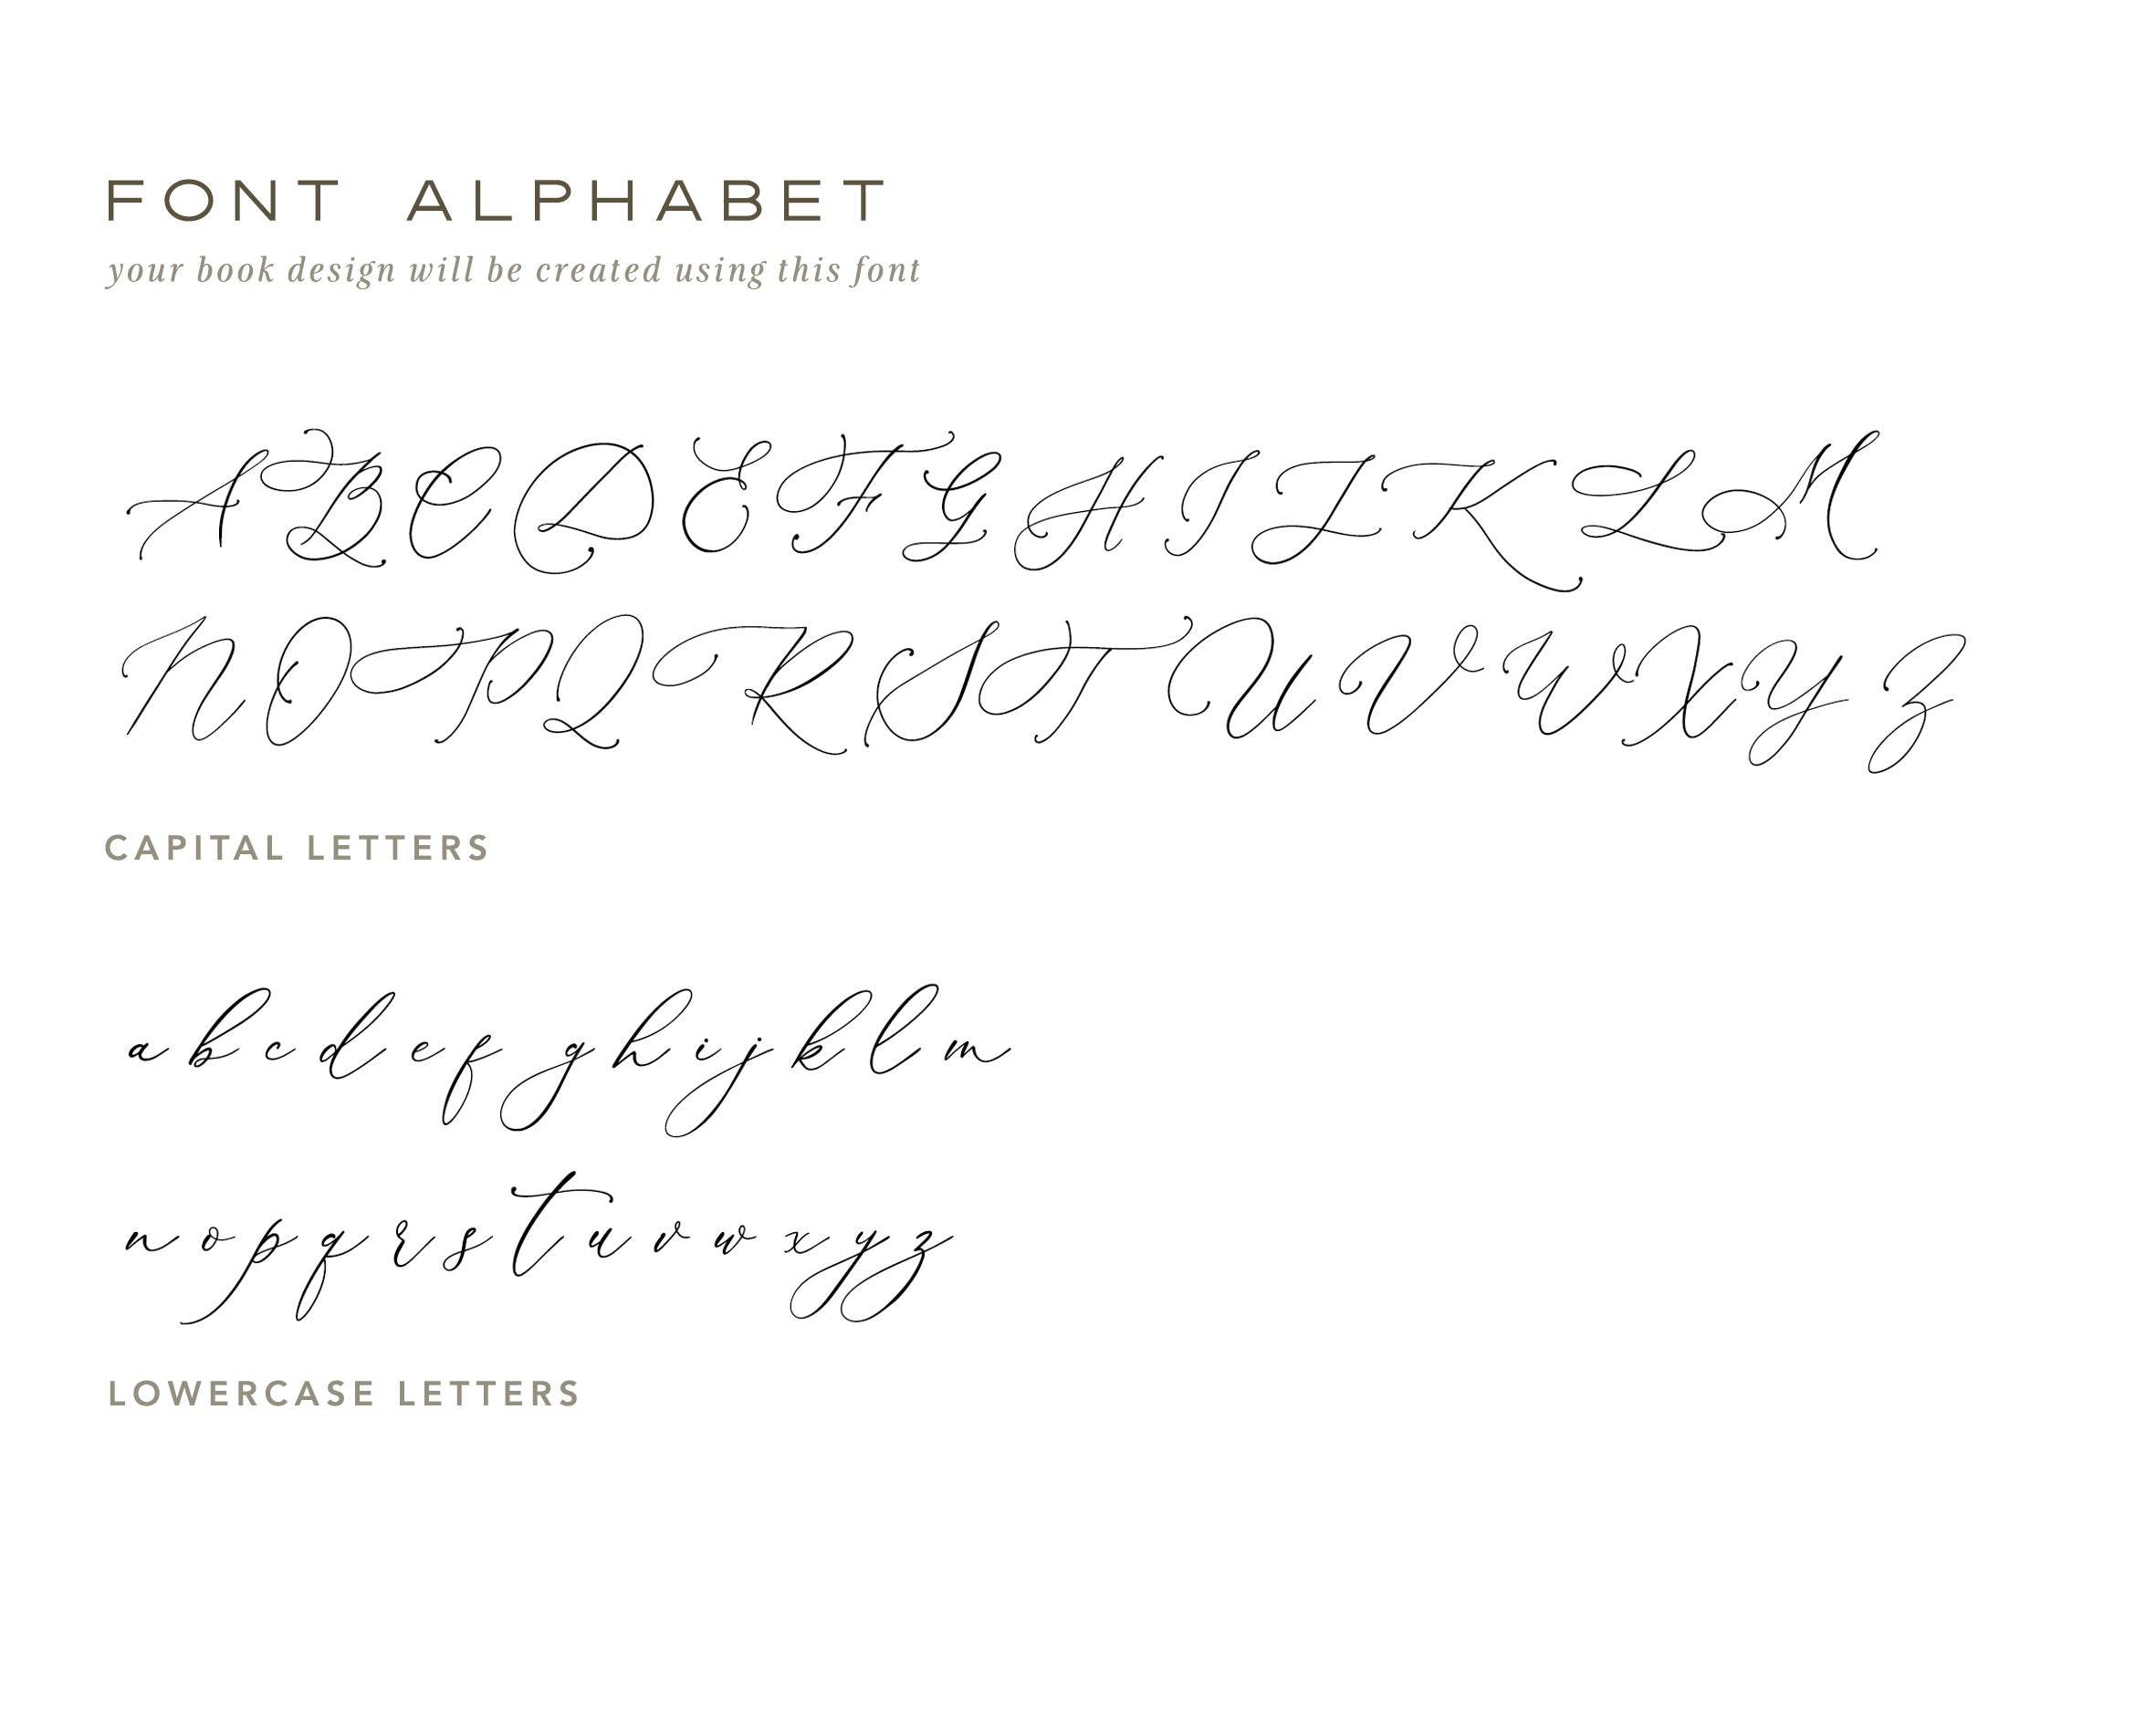 Wedding guest book font alphabet.